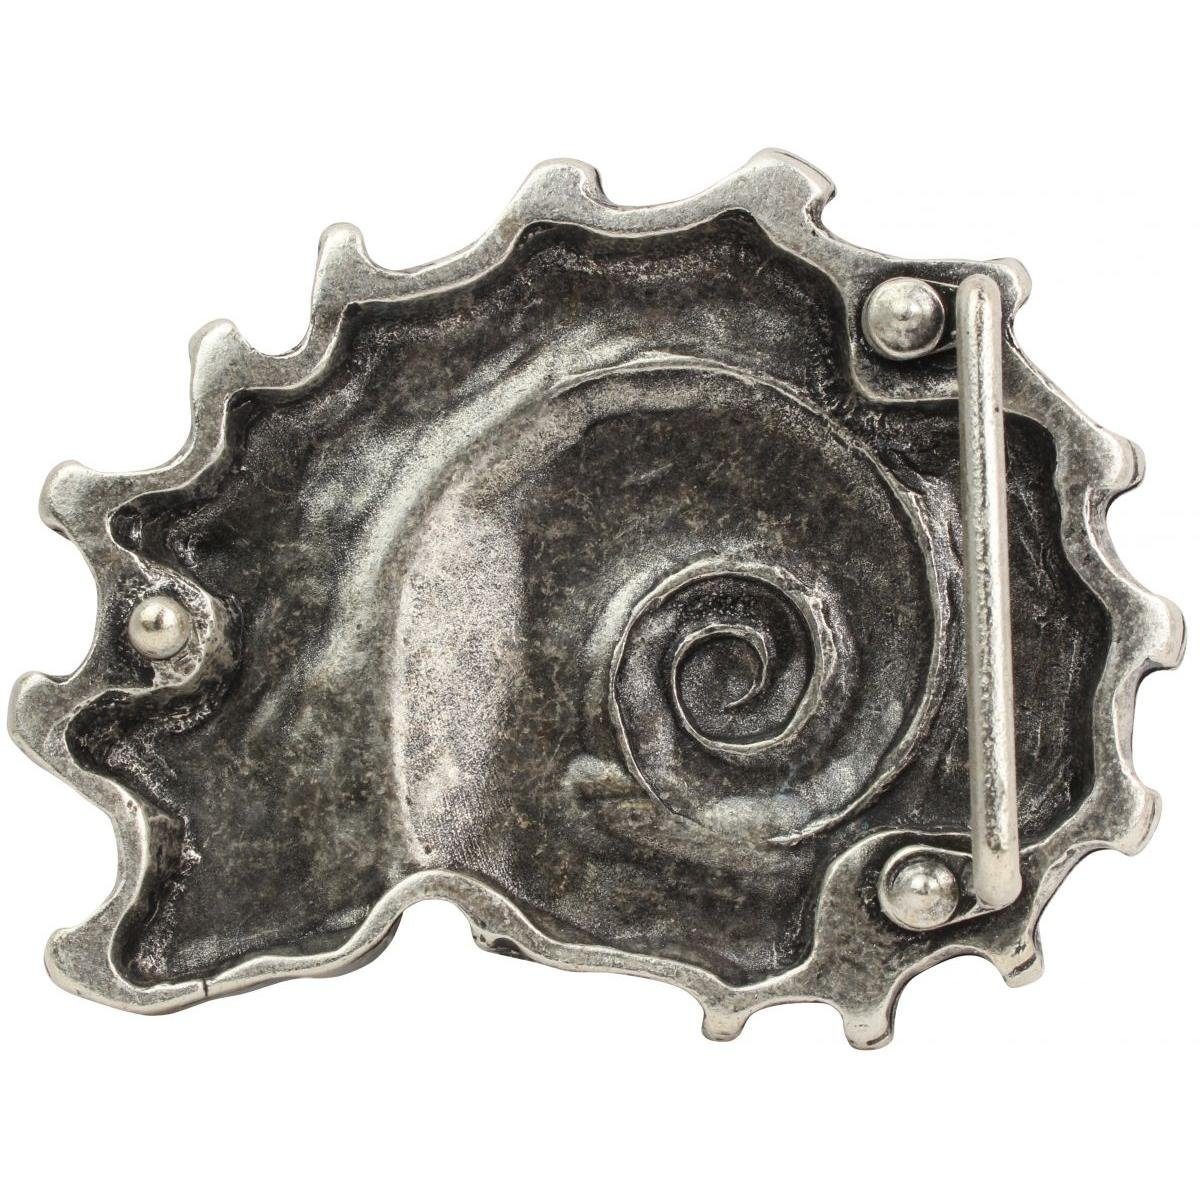 Muschel BELTINGER 4,0 - 40mm b cm Wechselschließe - Gürtel Gürtelschnalle Gürtelschließe Buckle